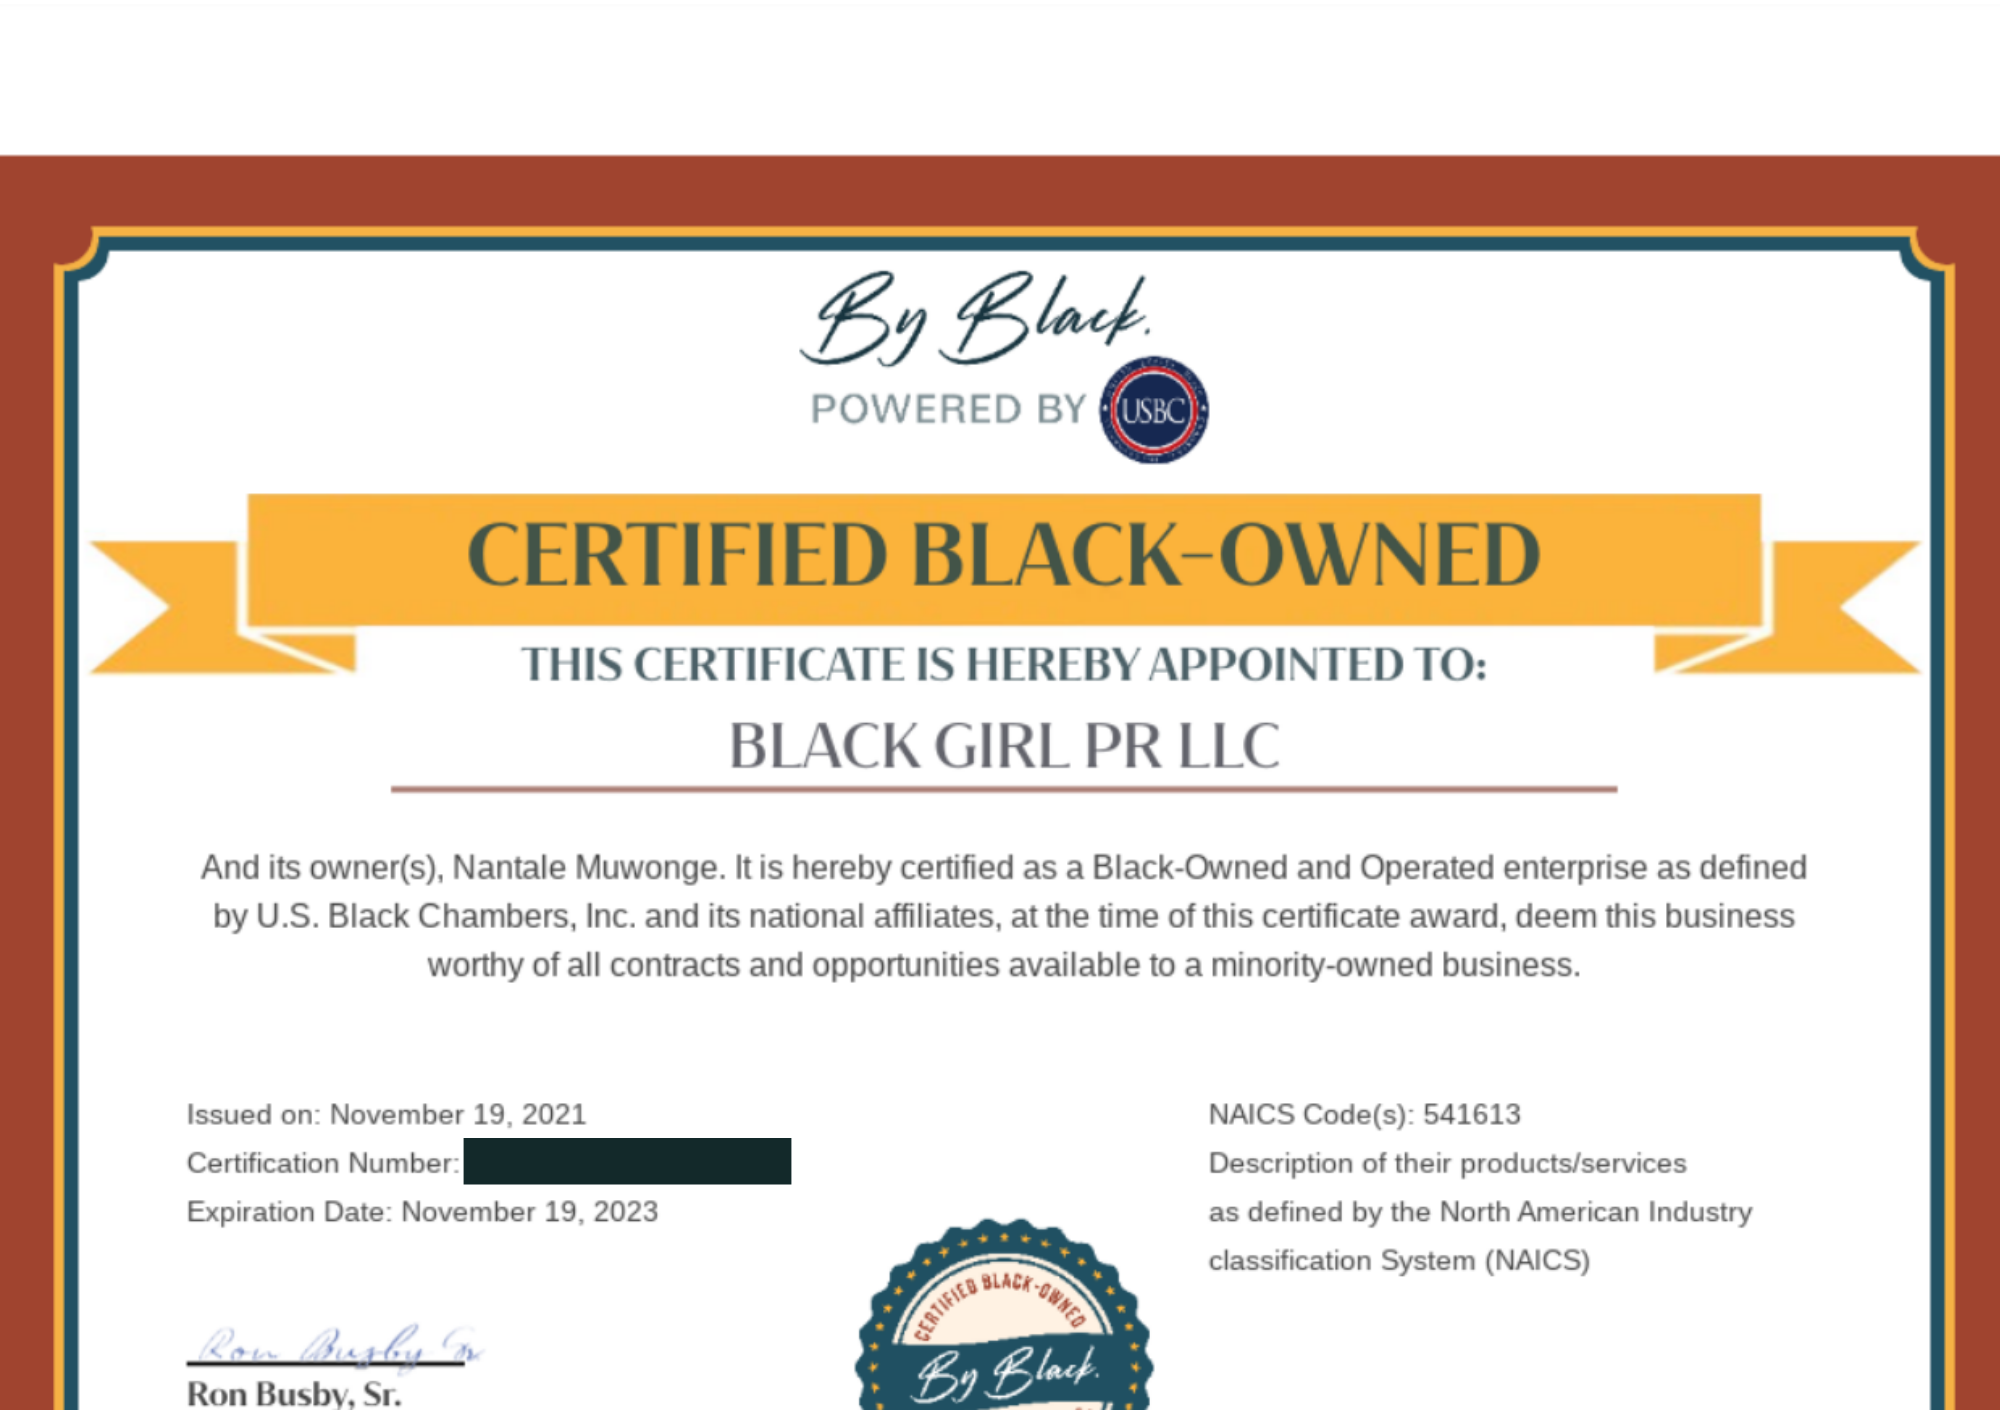 Black Girl PR's ByBlack certificate